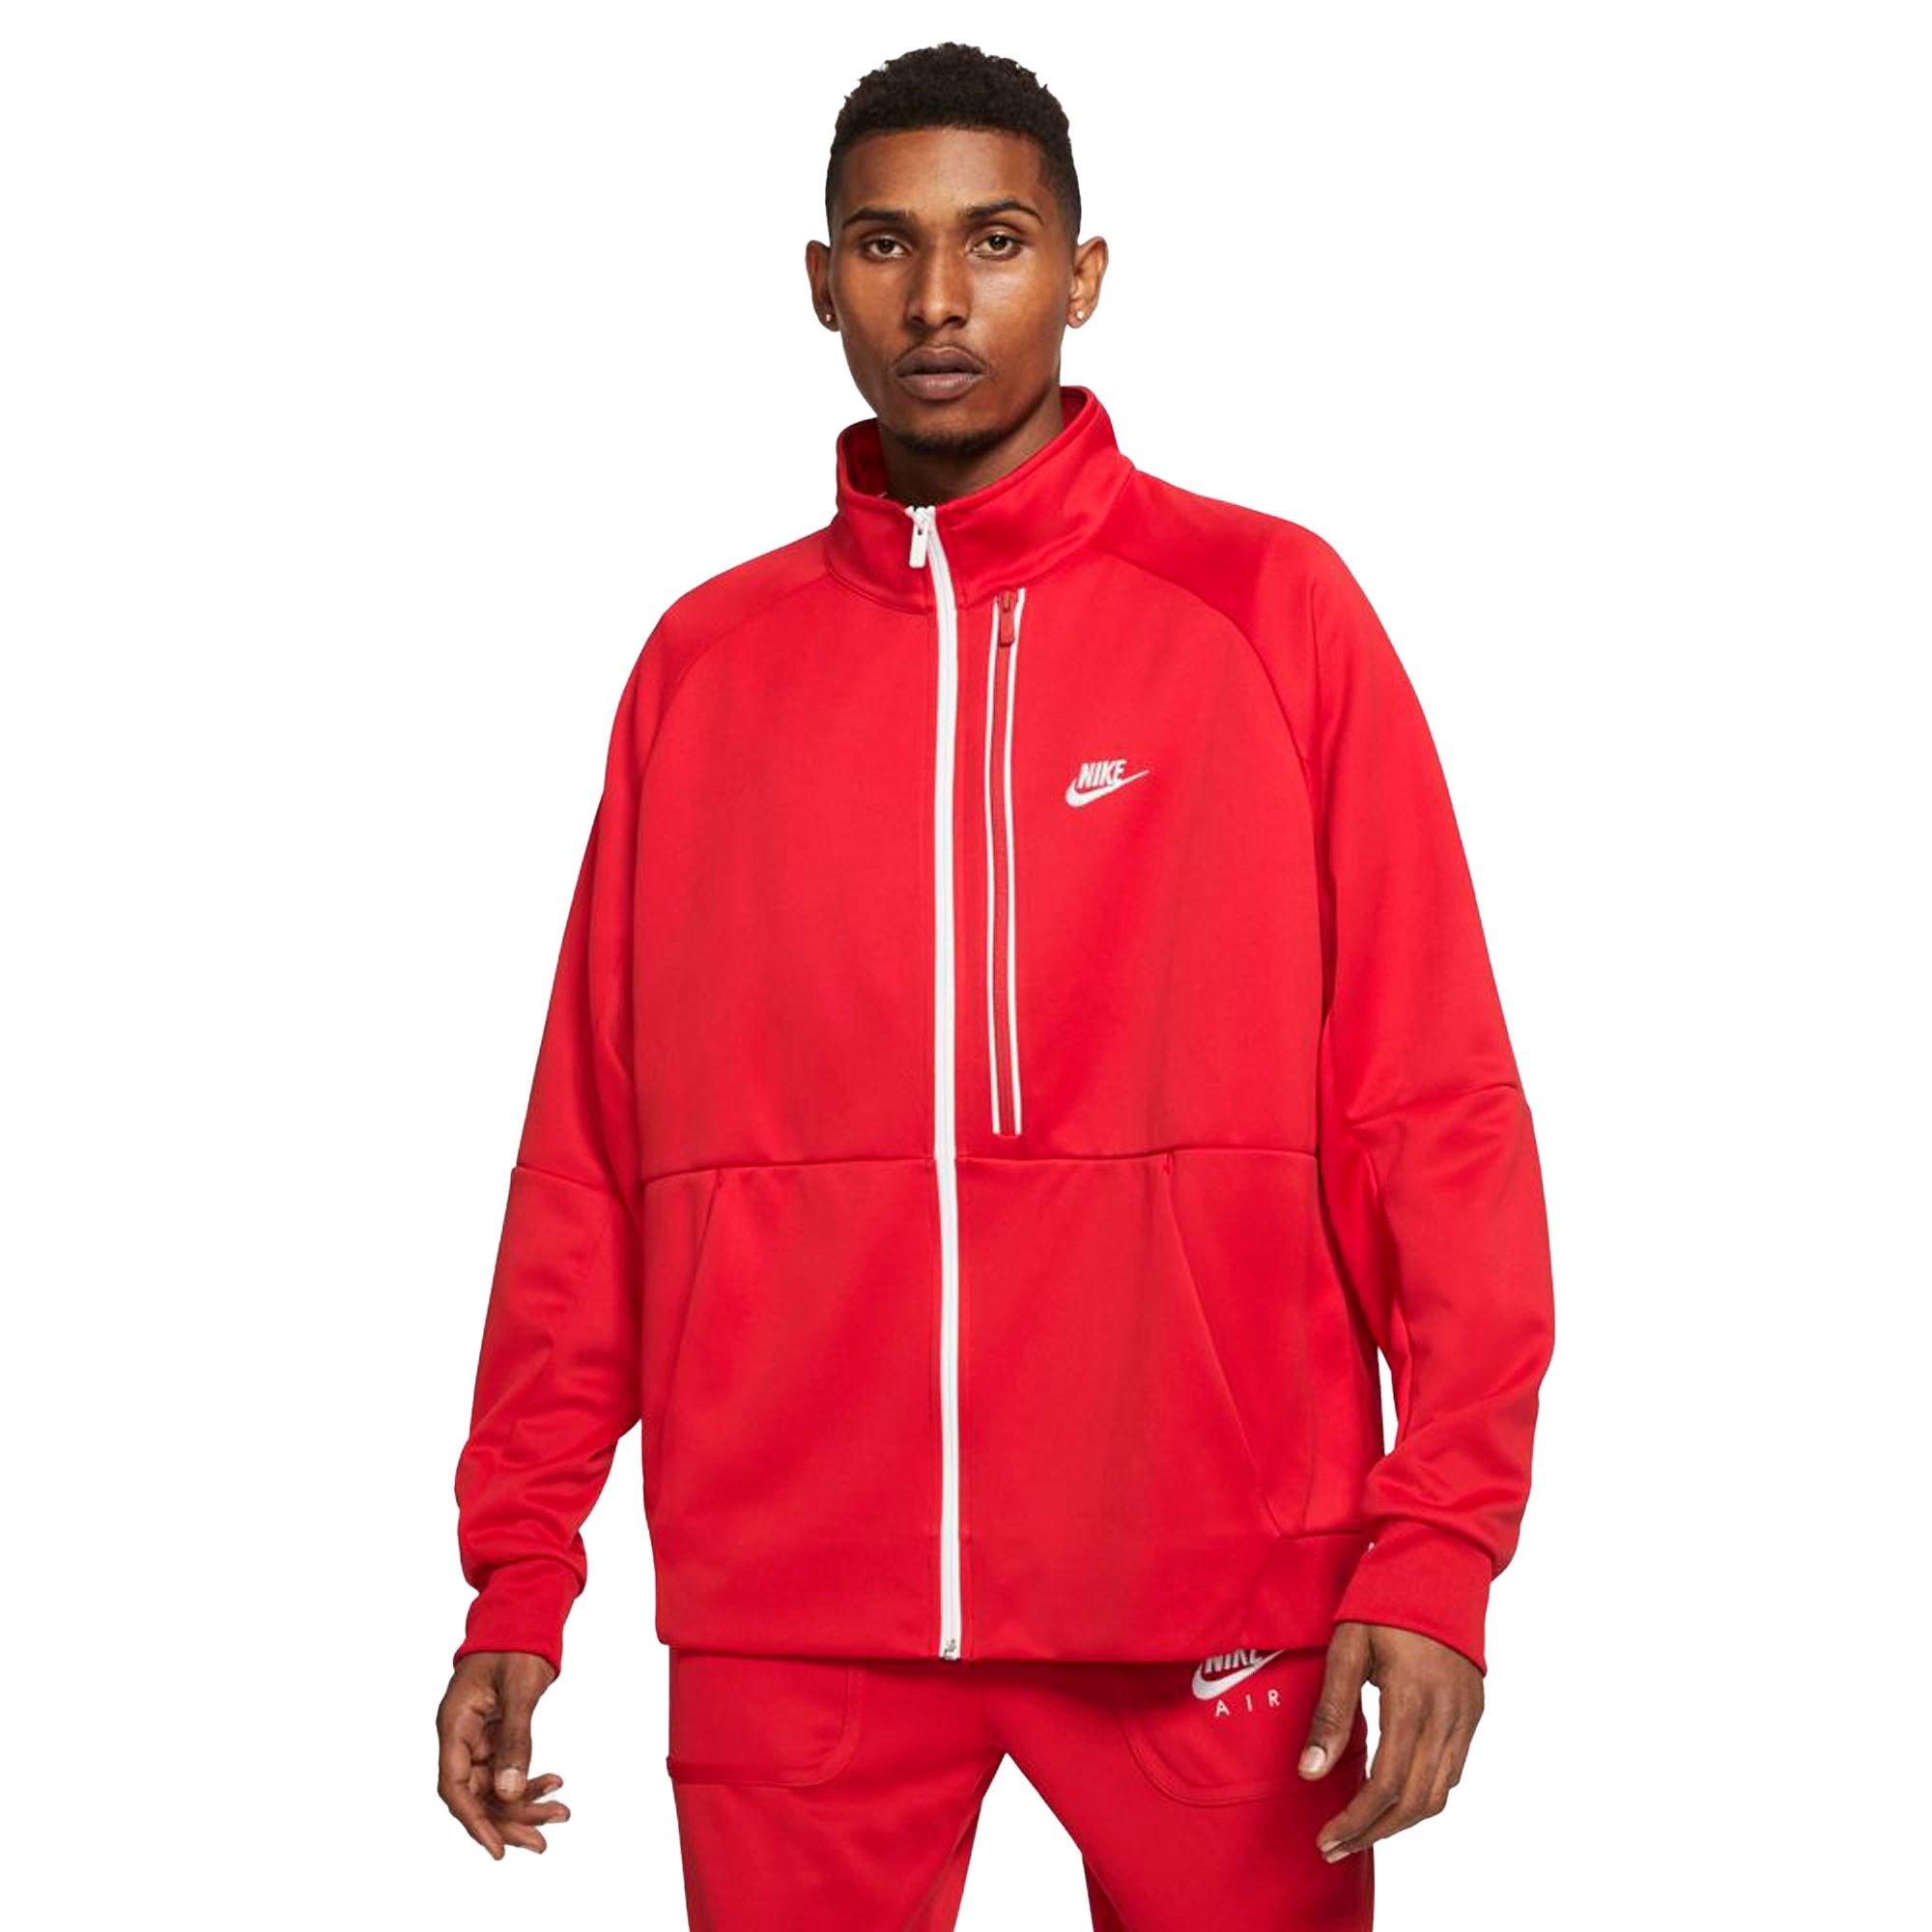 Nike Men's Sportswear Tribute N98 Jacket Red